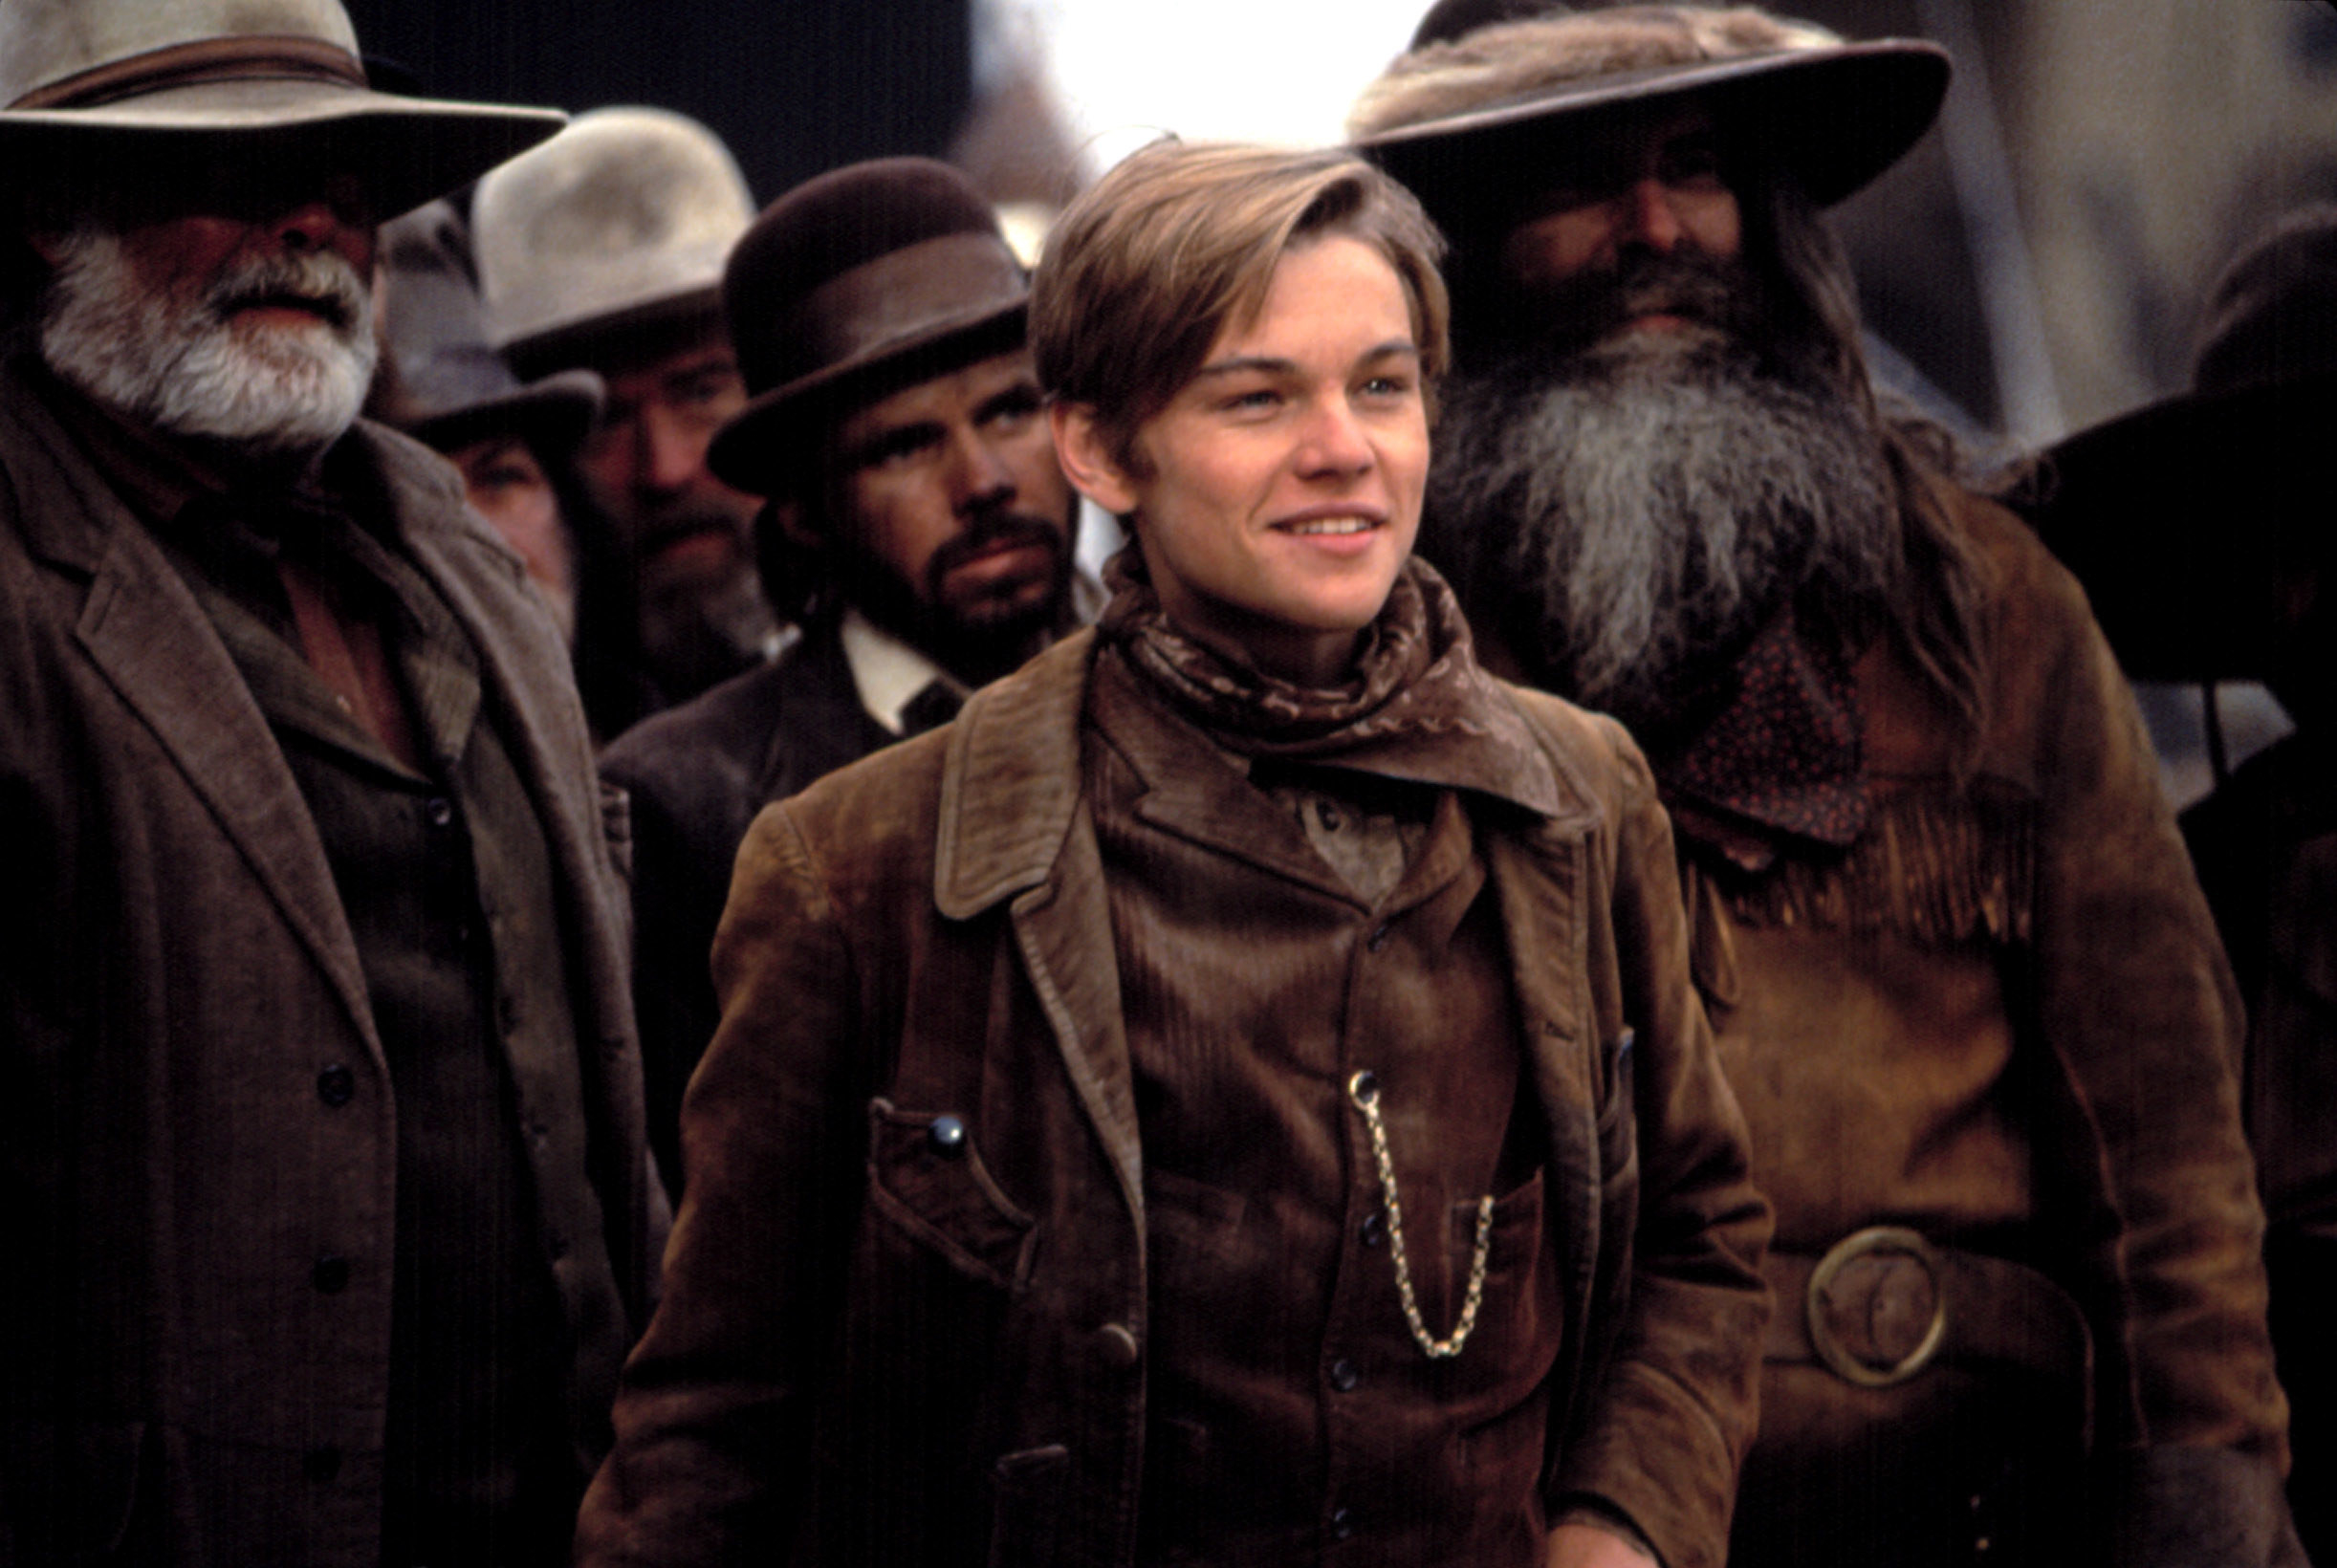 Leonardo DiCaprio stands with a bunch of cowboys